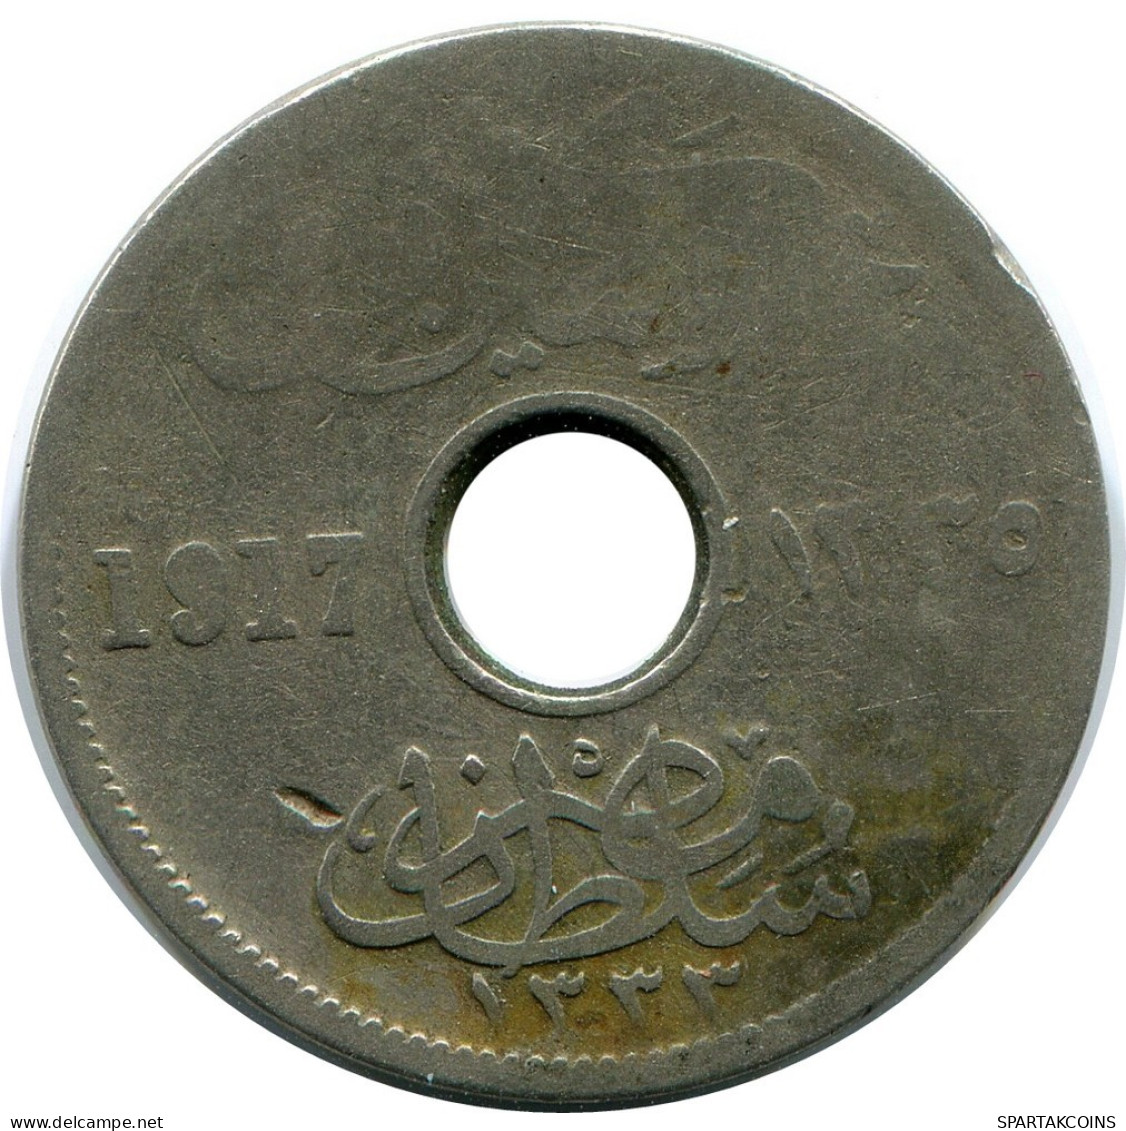 5 MILLIEMES 1917 EGIPTO EGYPT Moneda Hussein Kamil #AP153.E.A - Aegypten